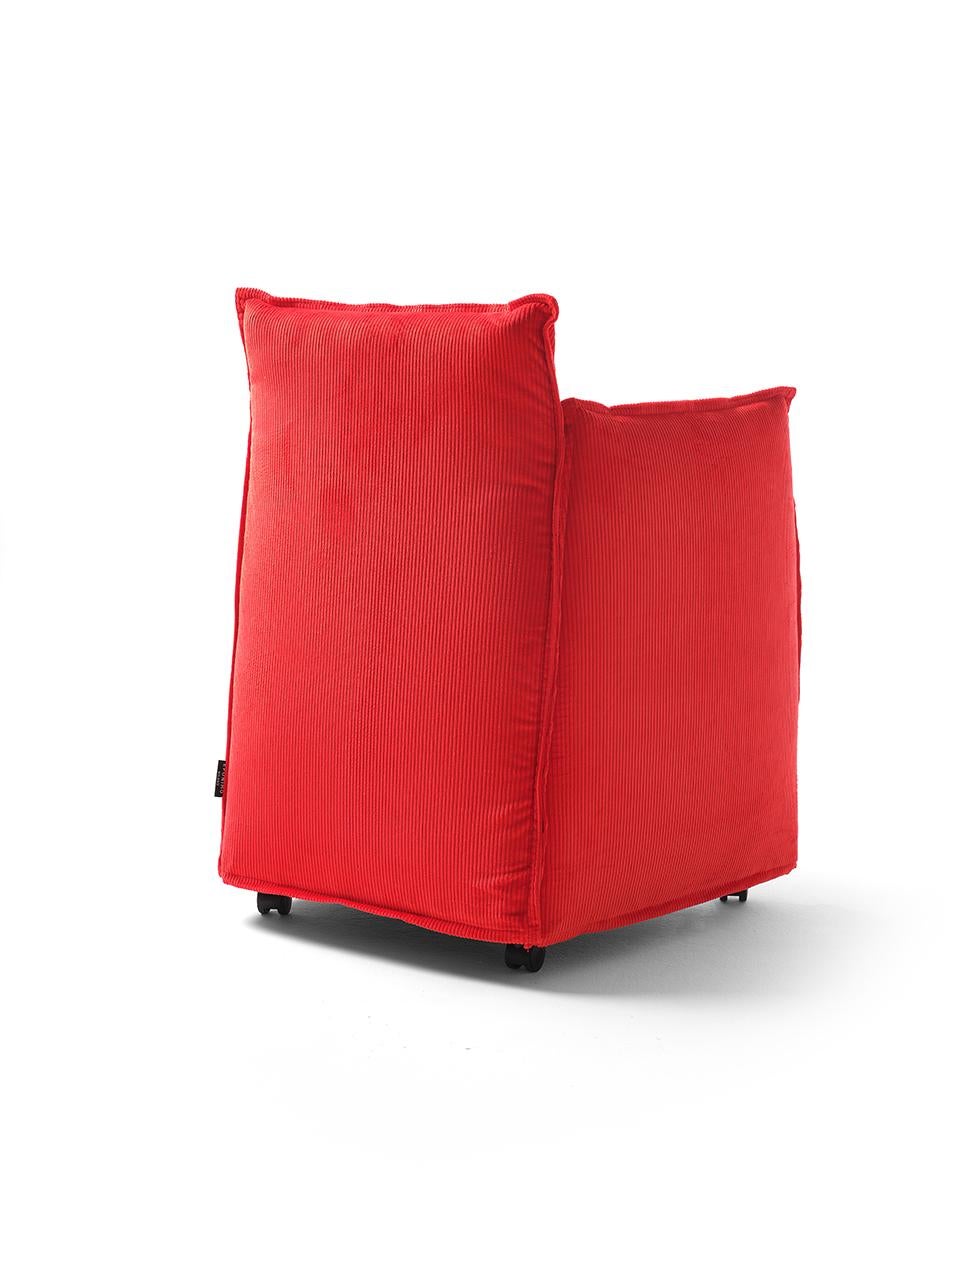 Medven ist ein textiler Sessel, der aus mehreren Stahlrahmen besteht, die einzeln gepolstert und dann zusammengesetzt werden. Der bewusst üppige Bezug und die weiche Innenfüllung verleihen dem Sessel einen ungezwungenen und einladenden Charakter.